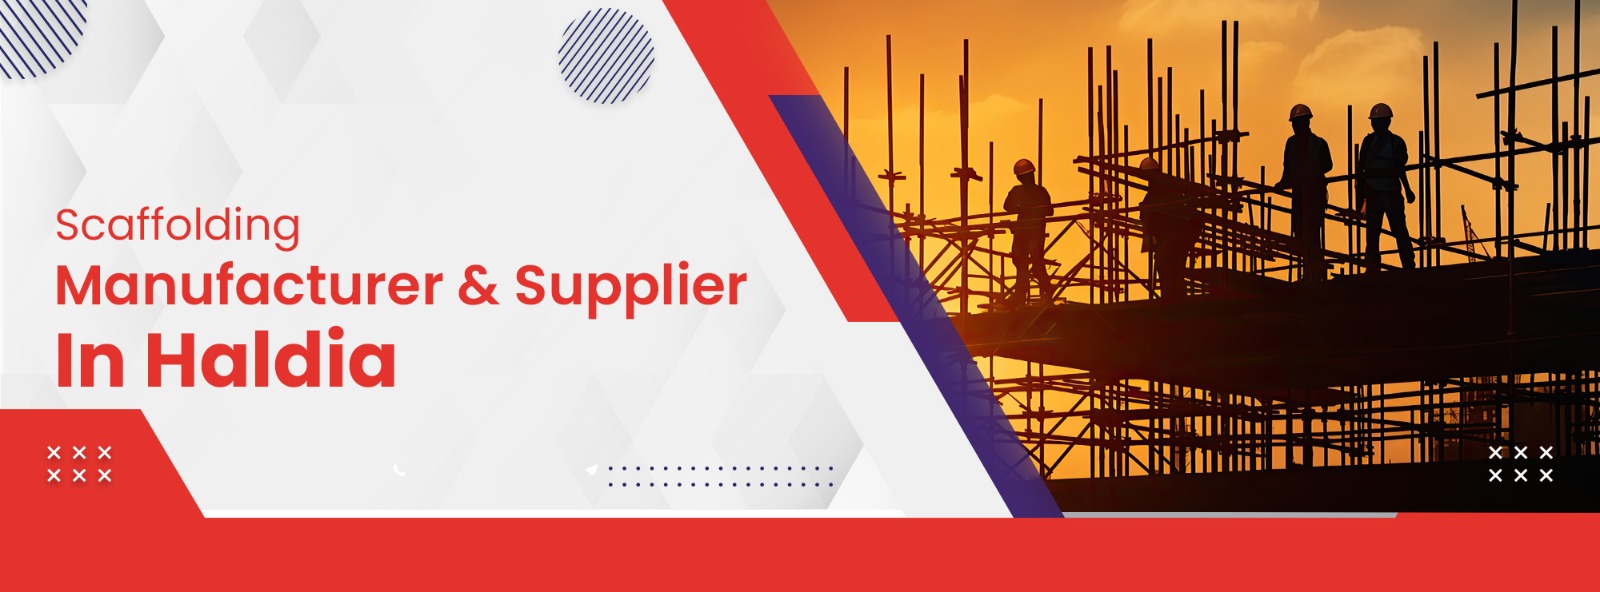 Scaffolding Manufacturer & Supplier In Haldia